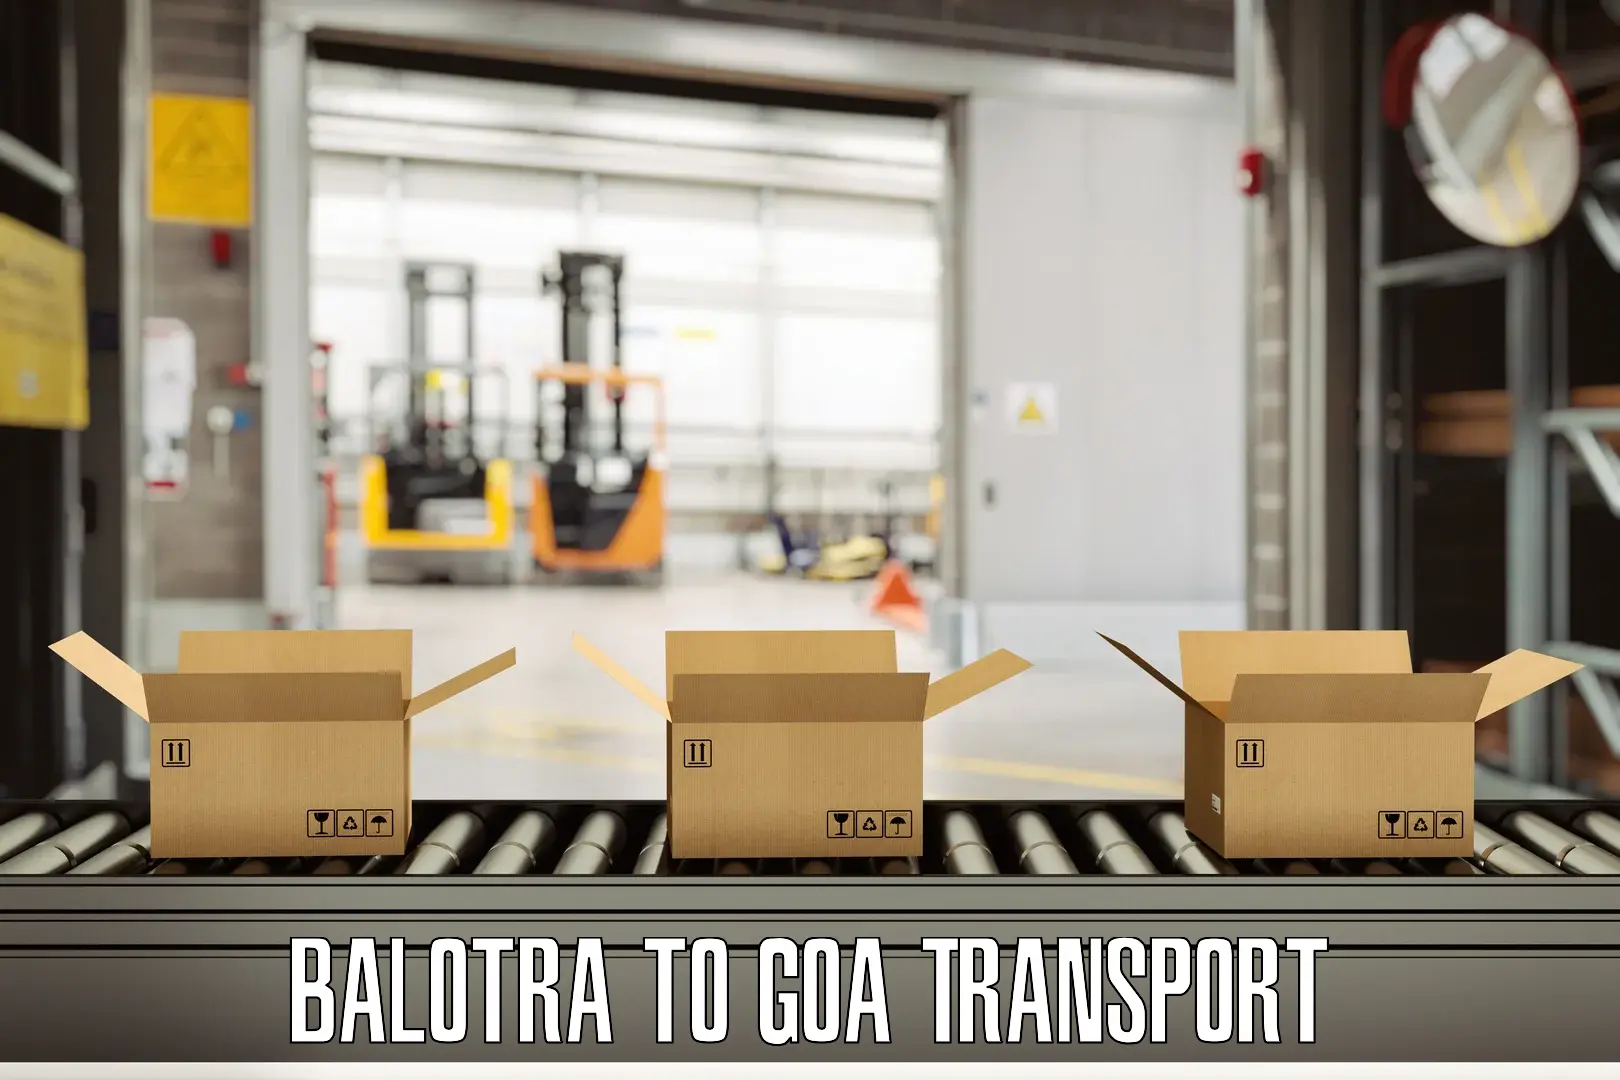 Daily transport service Balotra to Mormugao Port